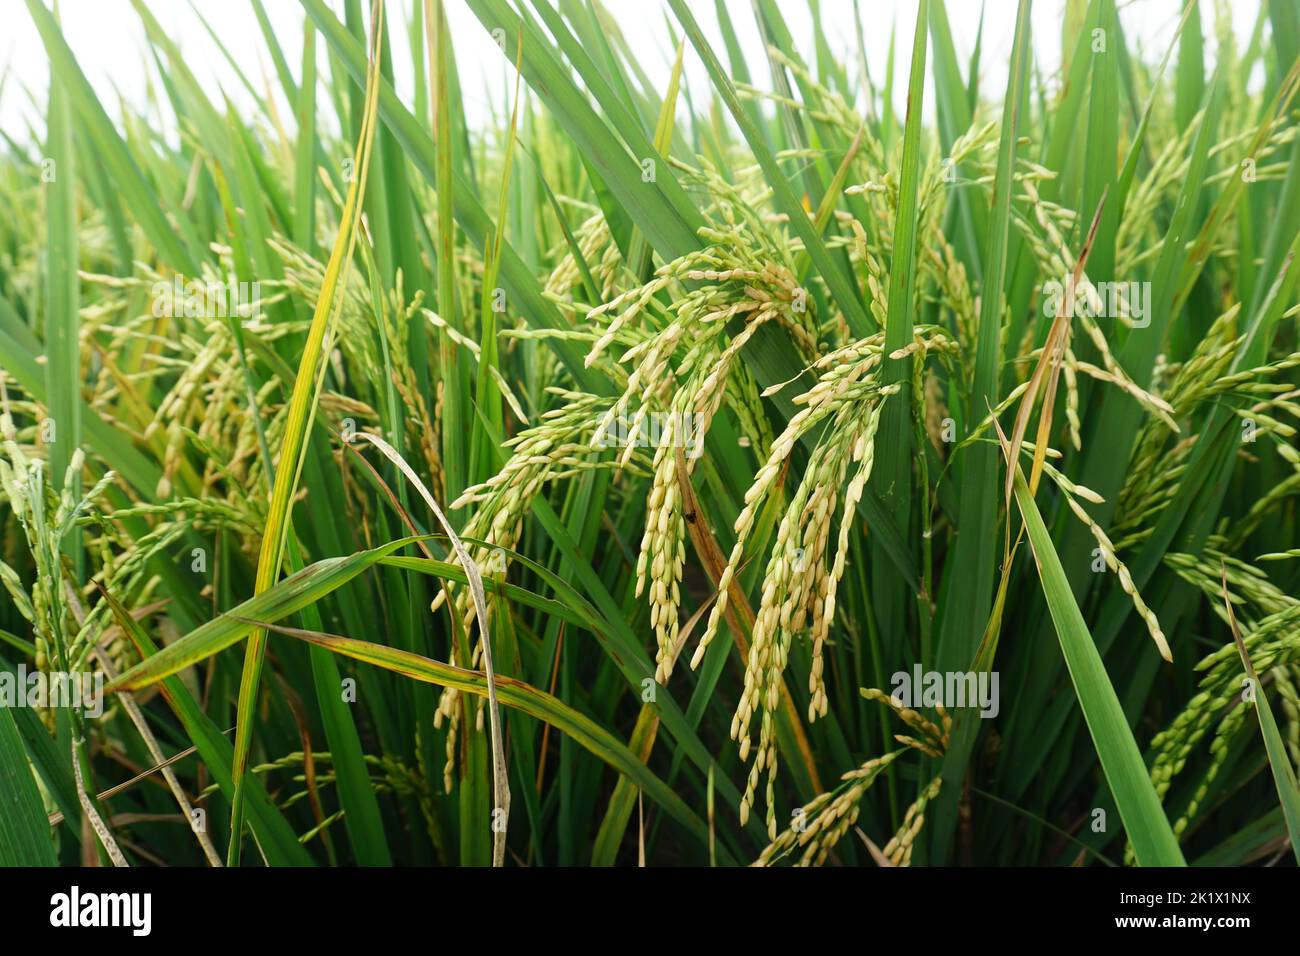 Reis bereit für die Ernte in Indonesien. Mit grünen Blättern und vergilbtem Reis. Es gibt unberührte Reisfelder in den Dörfern. Stockfoto